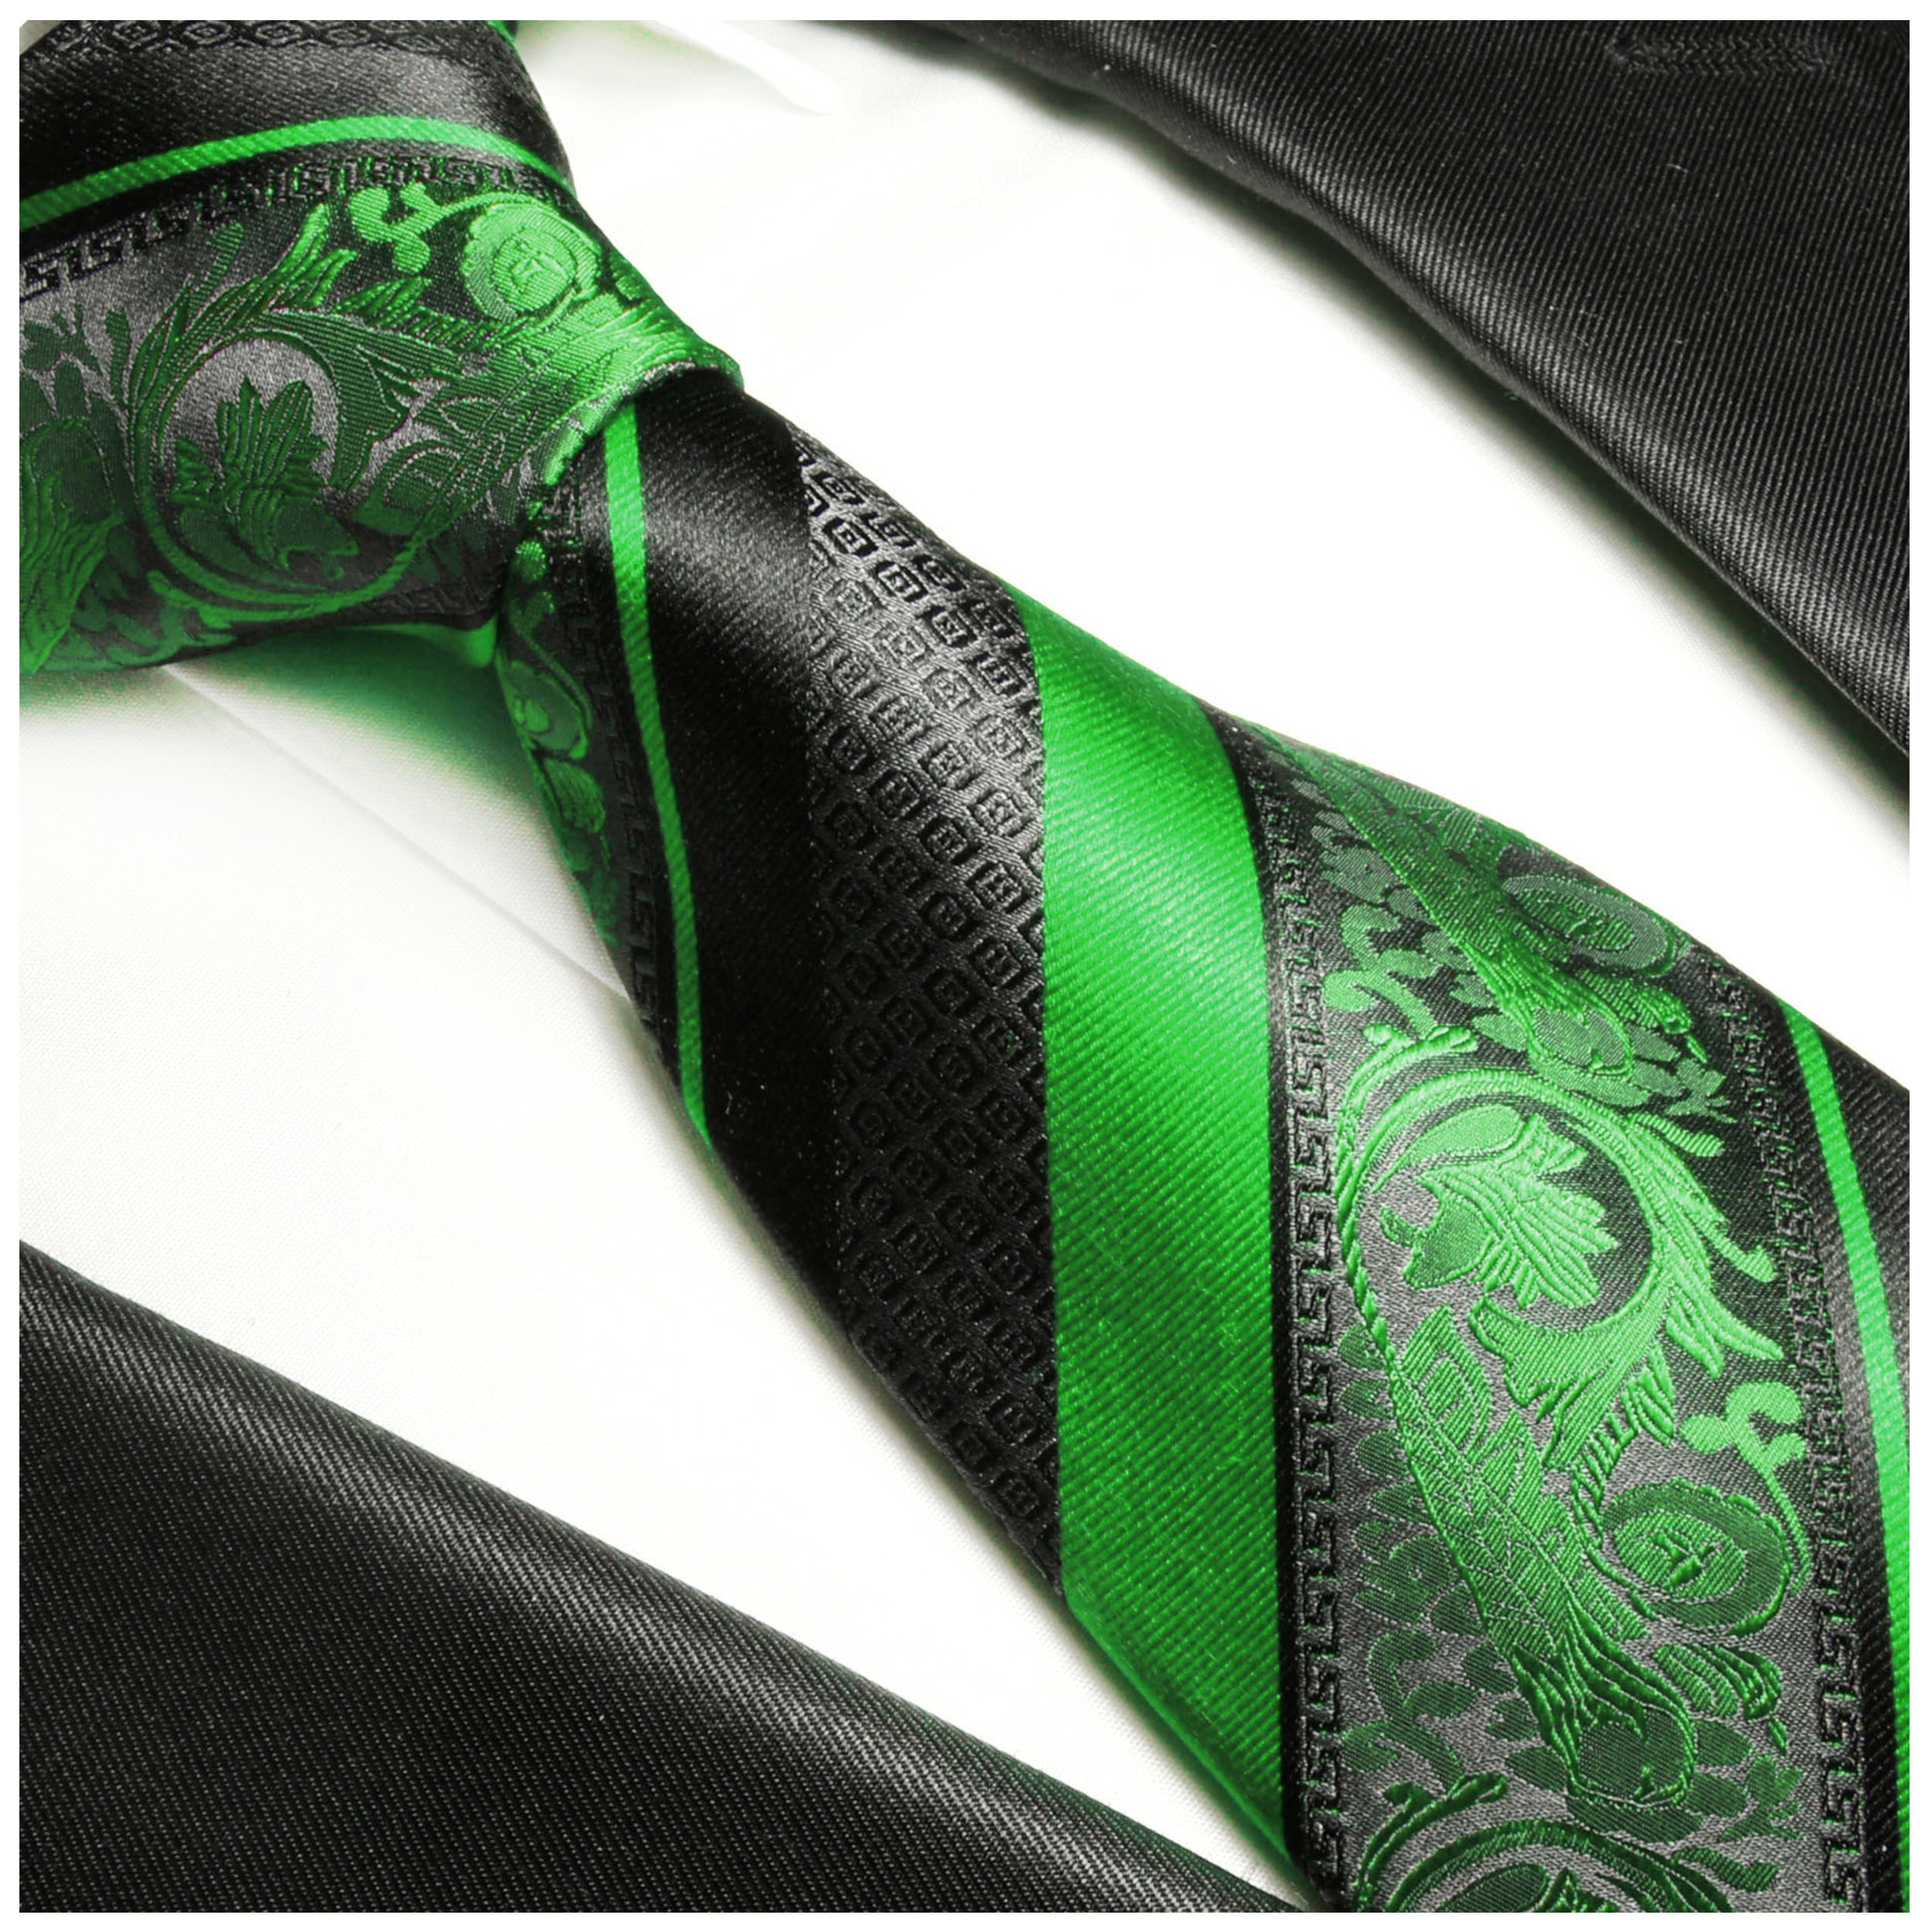 Krawatte grün barock Seide | JETZT BESTELLEN - Paul Malone Shop